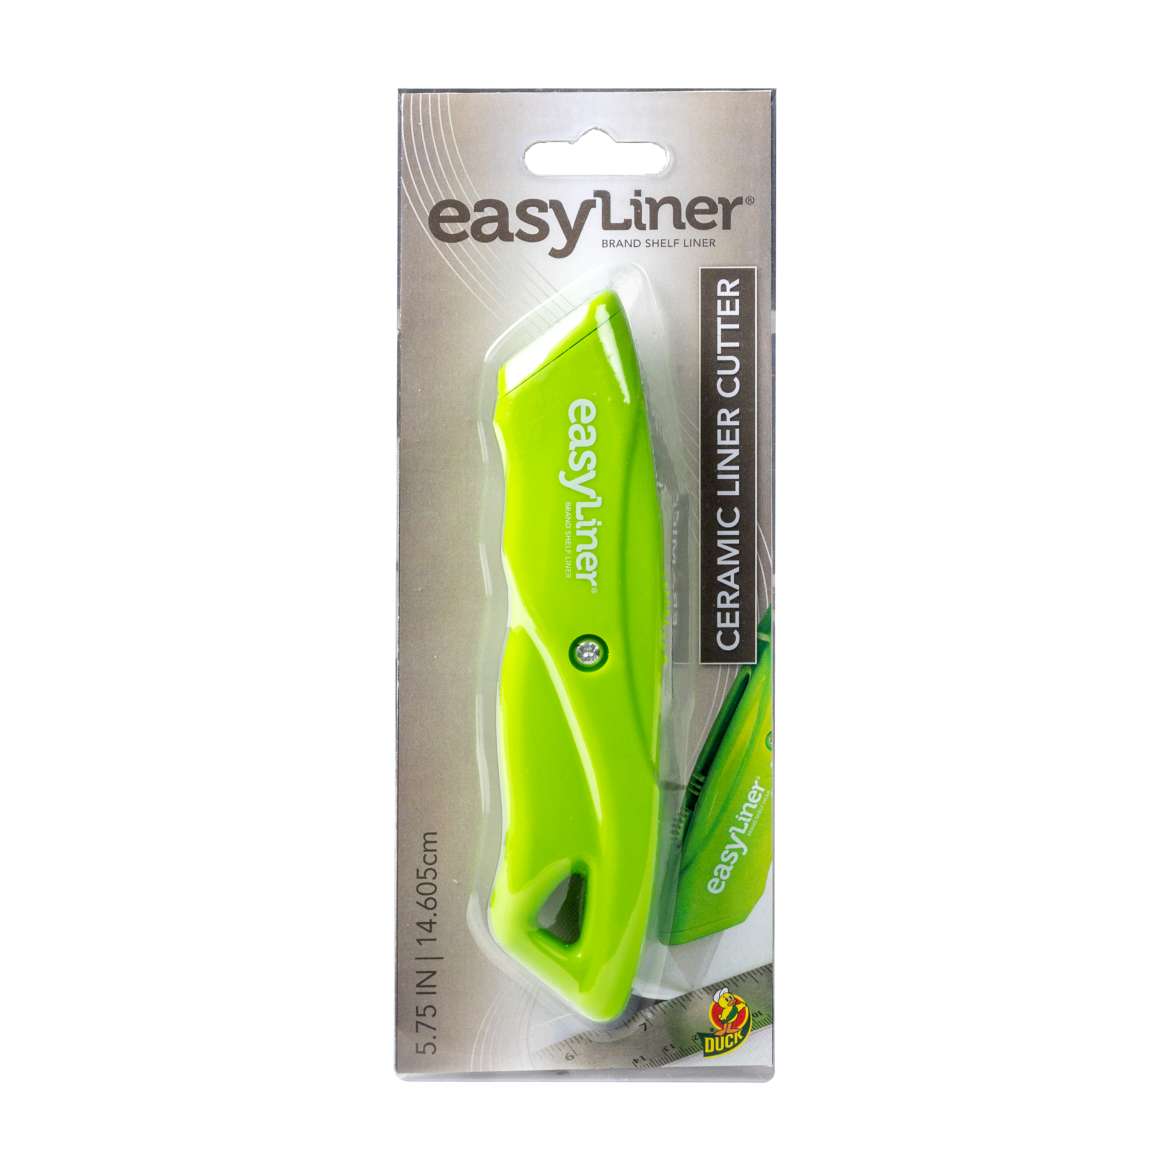 Easy Liner® Shelf Liner Cutter Image